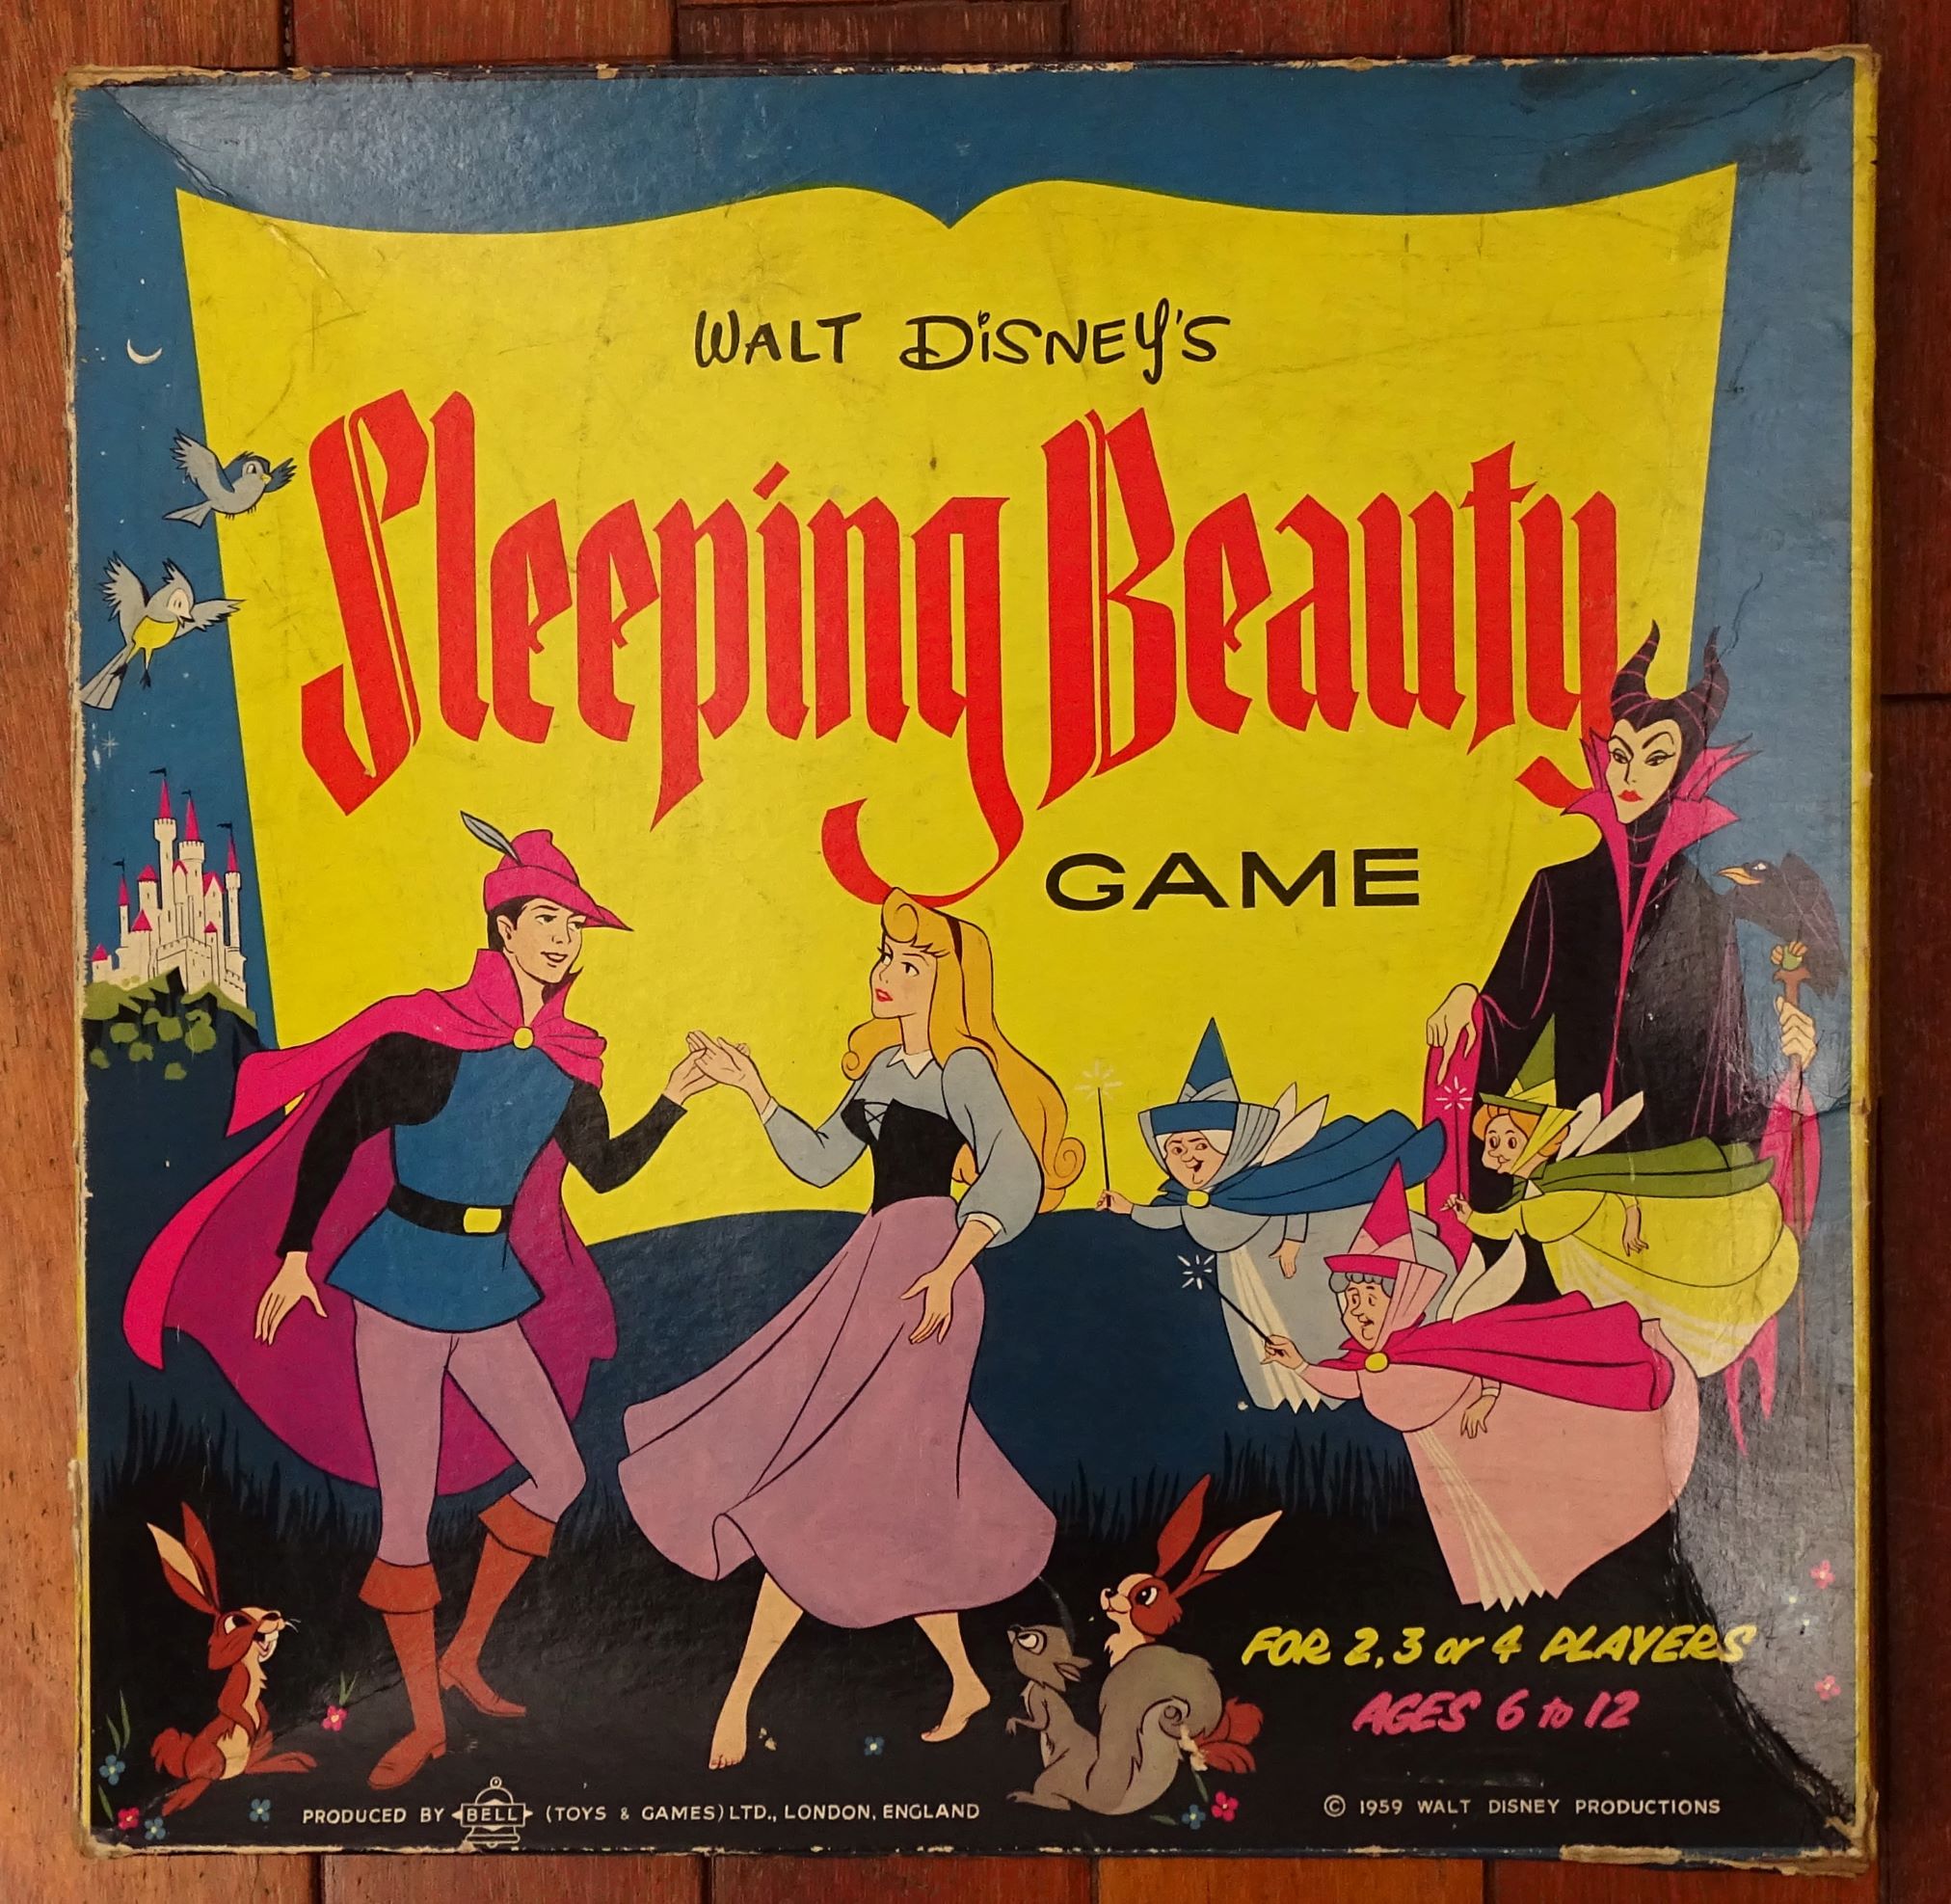 1959 Walt Disney's Sleeping Beauty Game by Bell Ltd., London, England -  tomsk3000